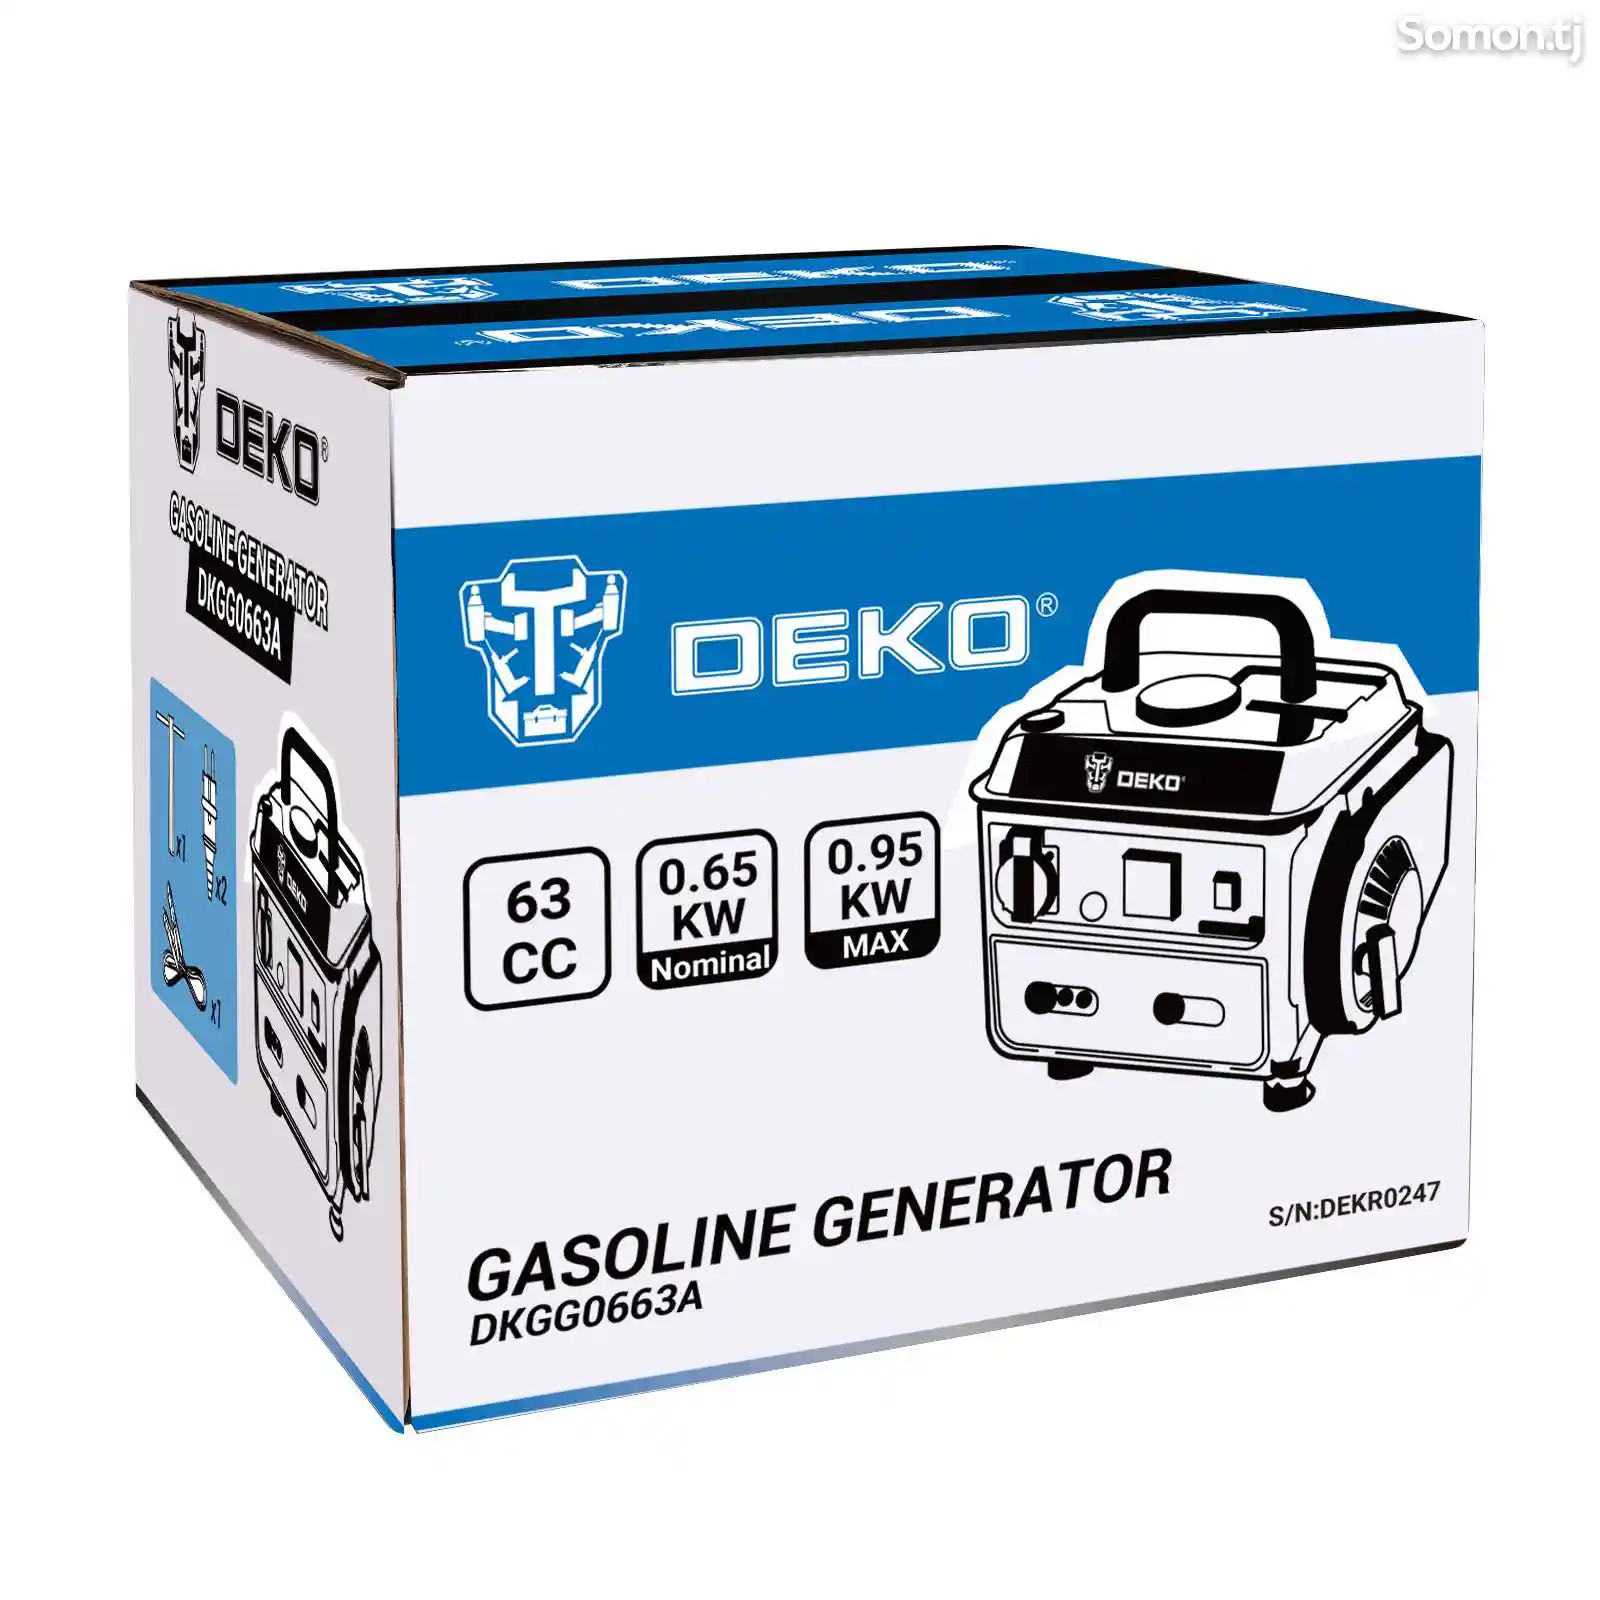 Бензиновый генератор 220V Deko DKGG0663A 1KW-3